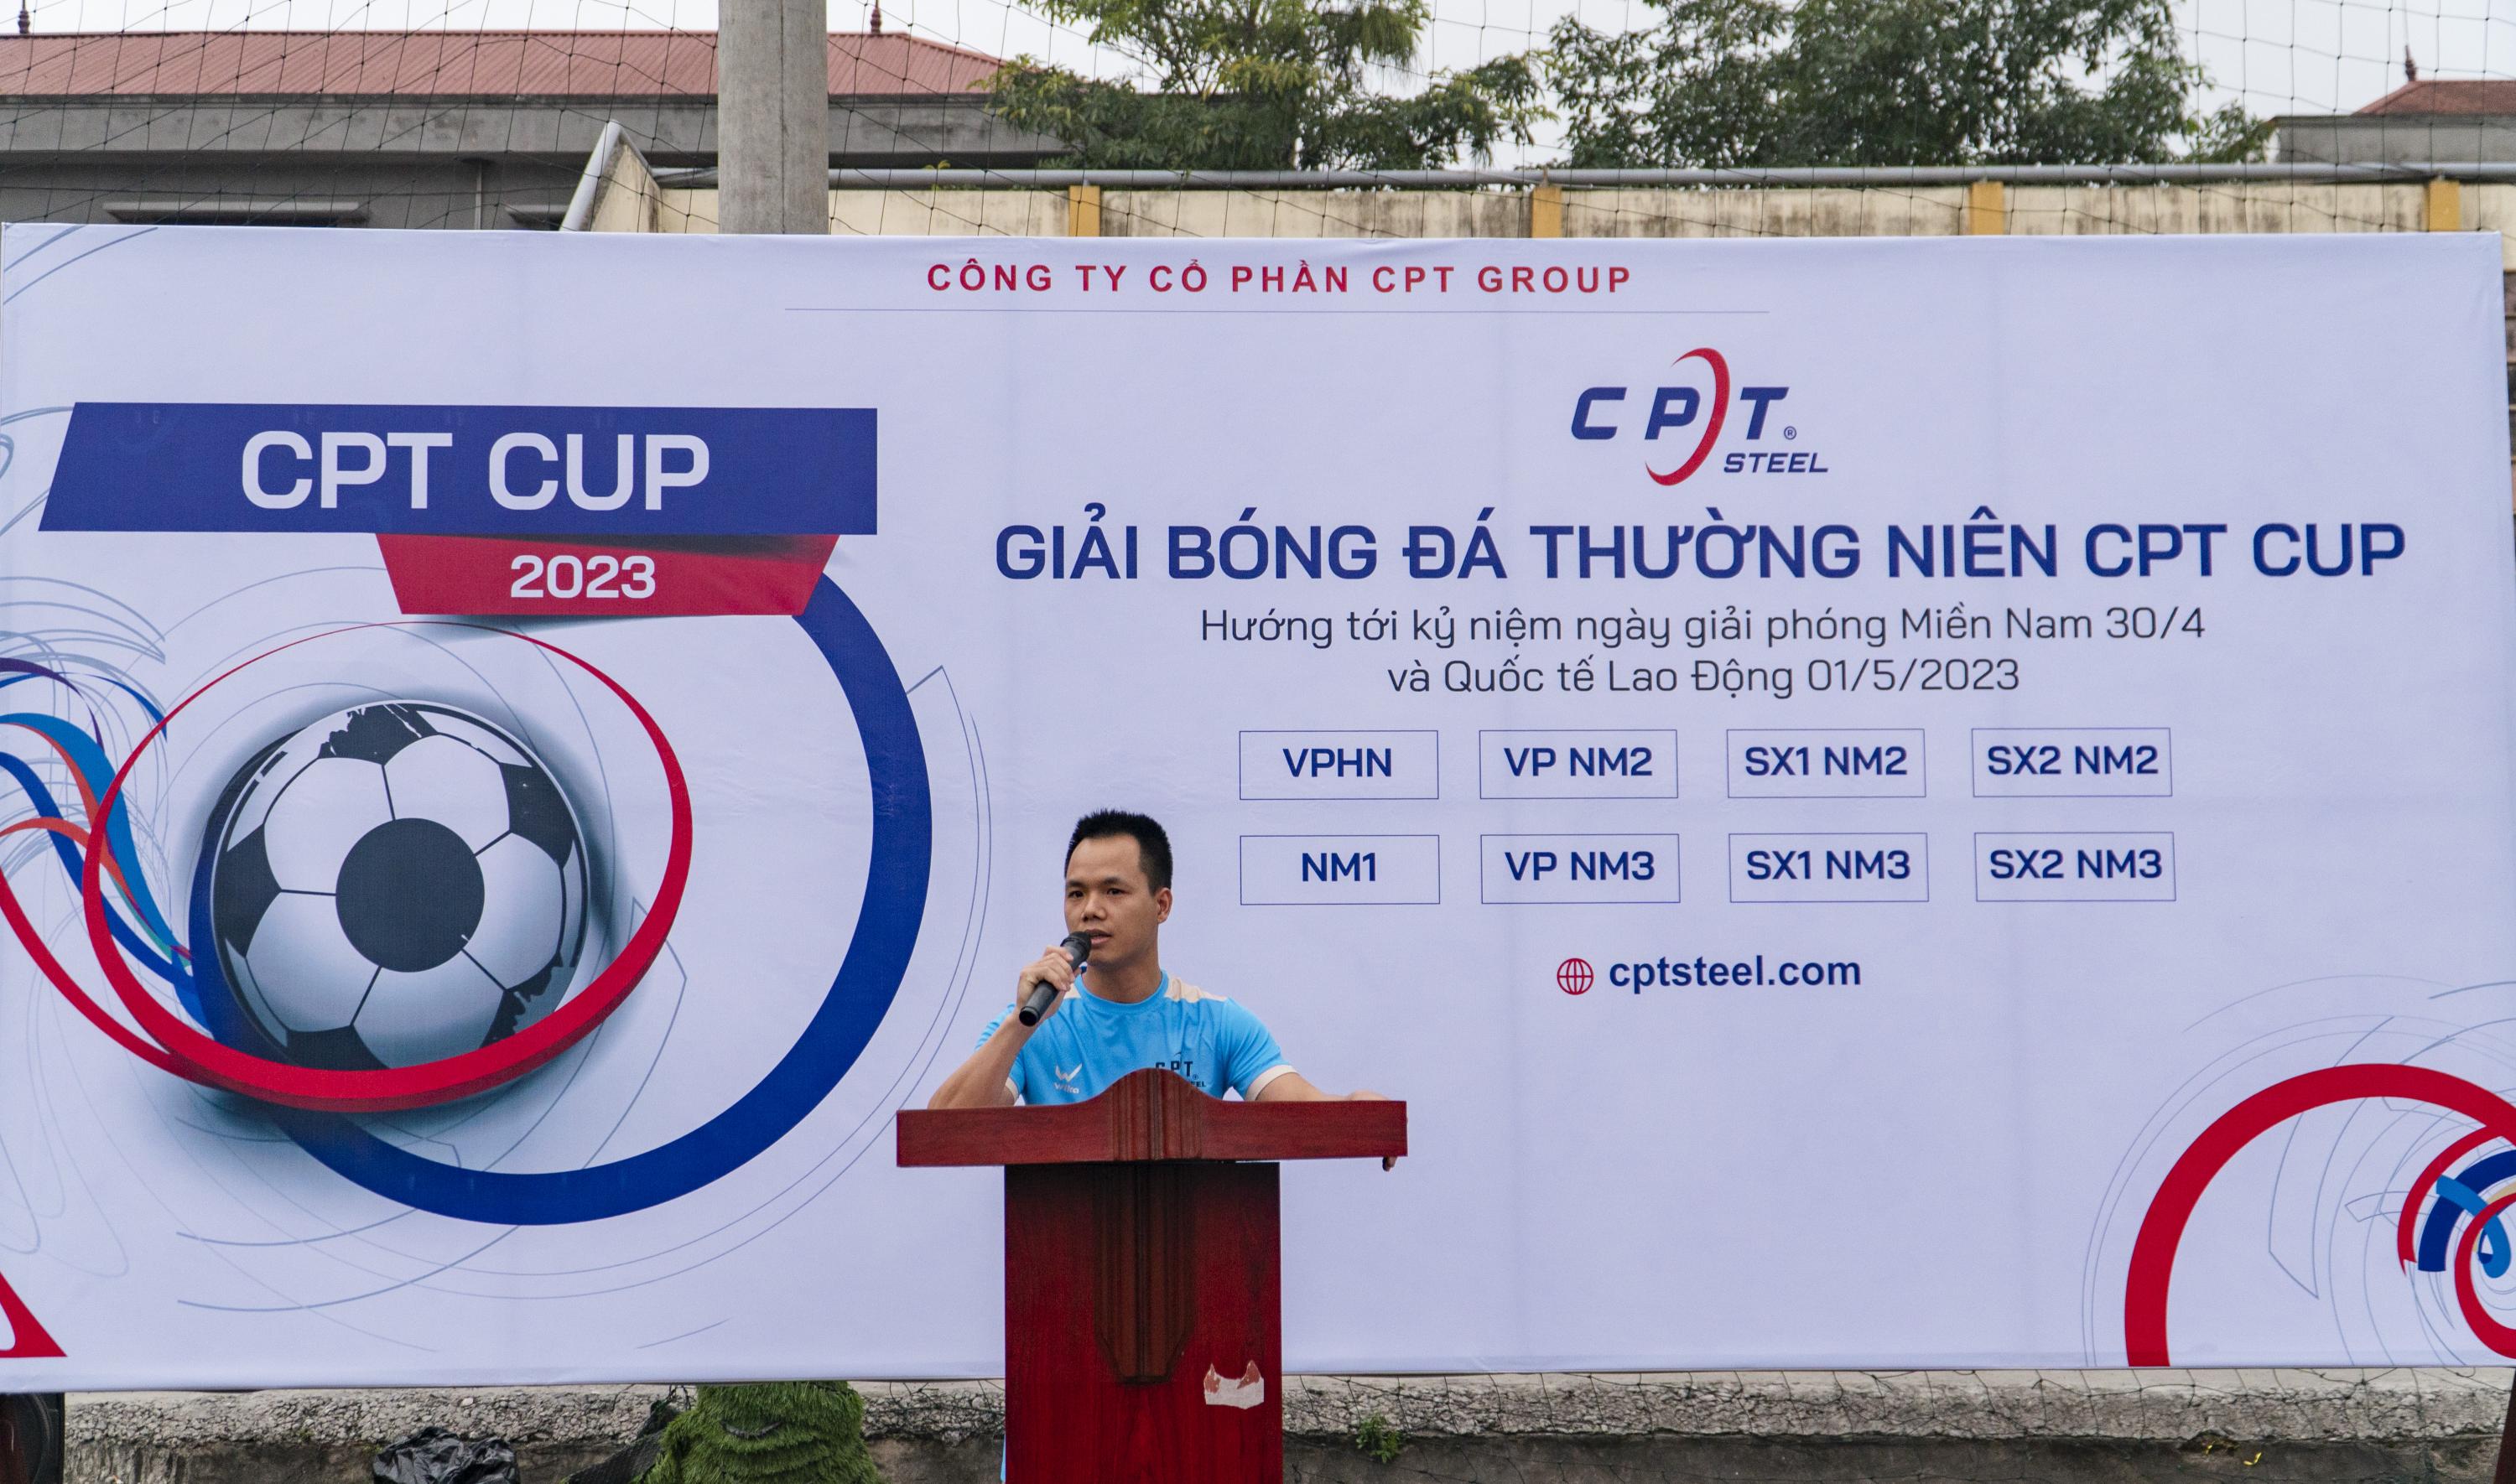 GIẢI BÓNG ĐÁ THƯỜNG NIÊN CPT CUP 2023